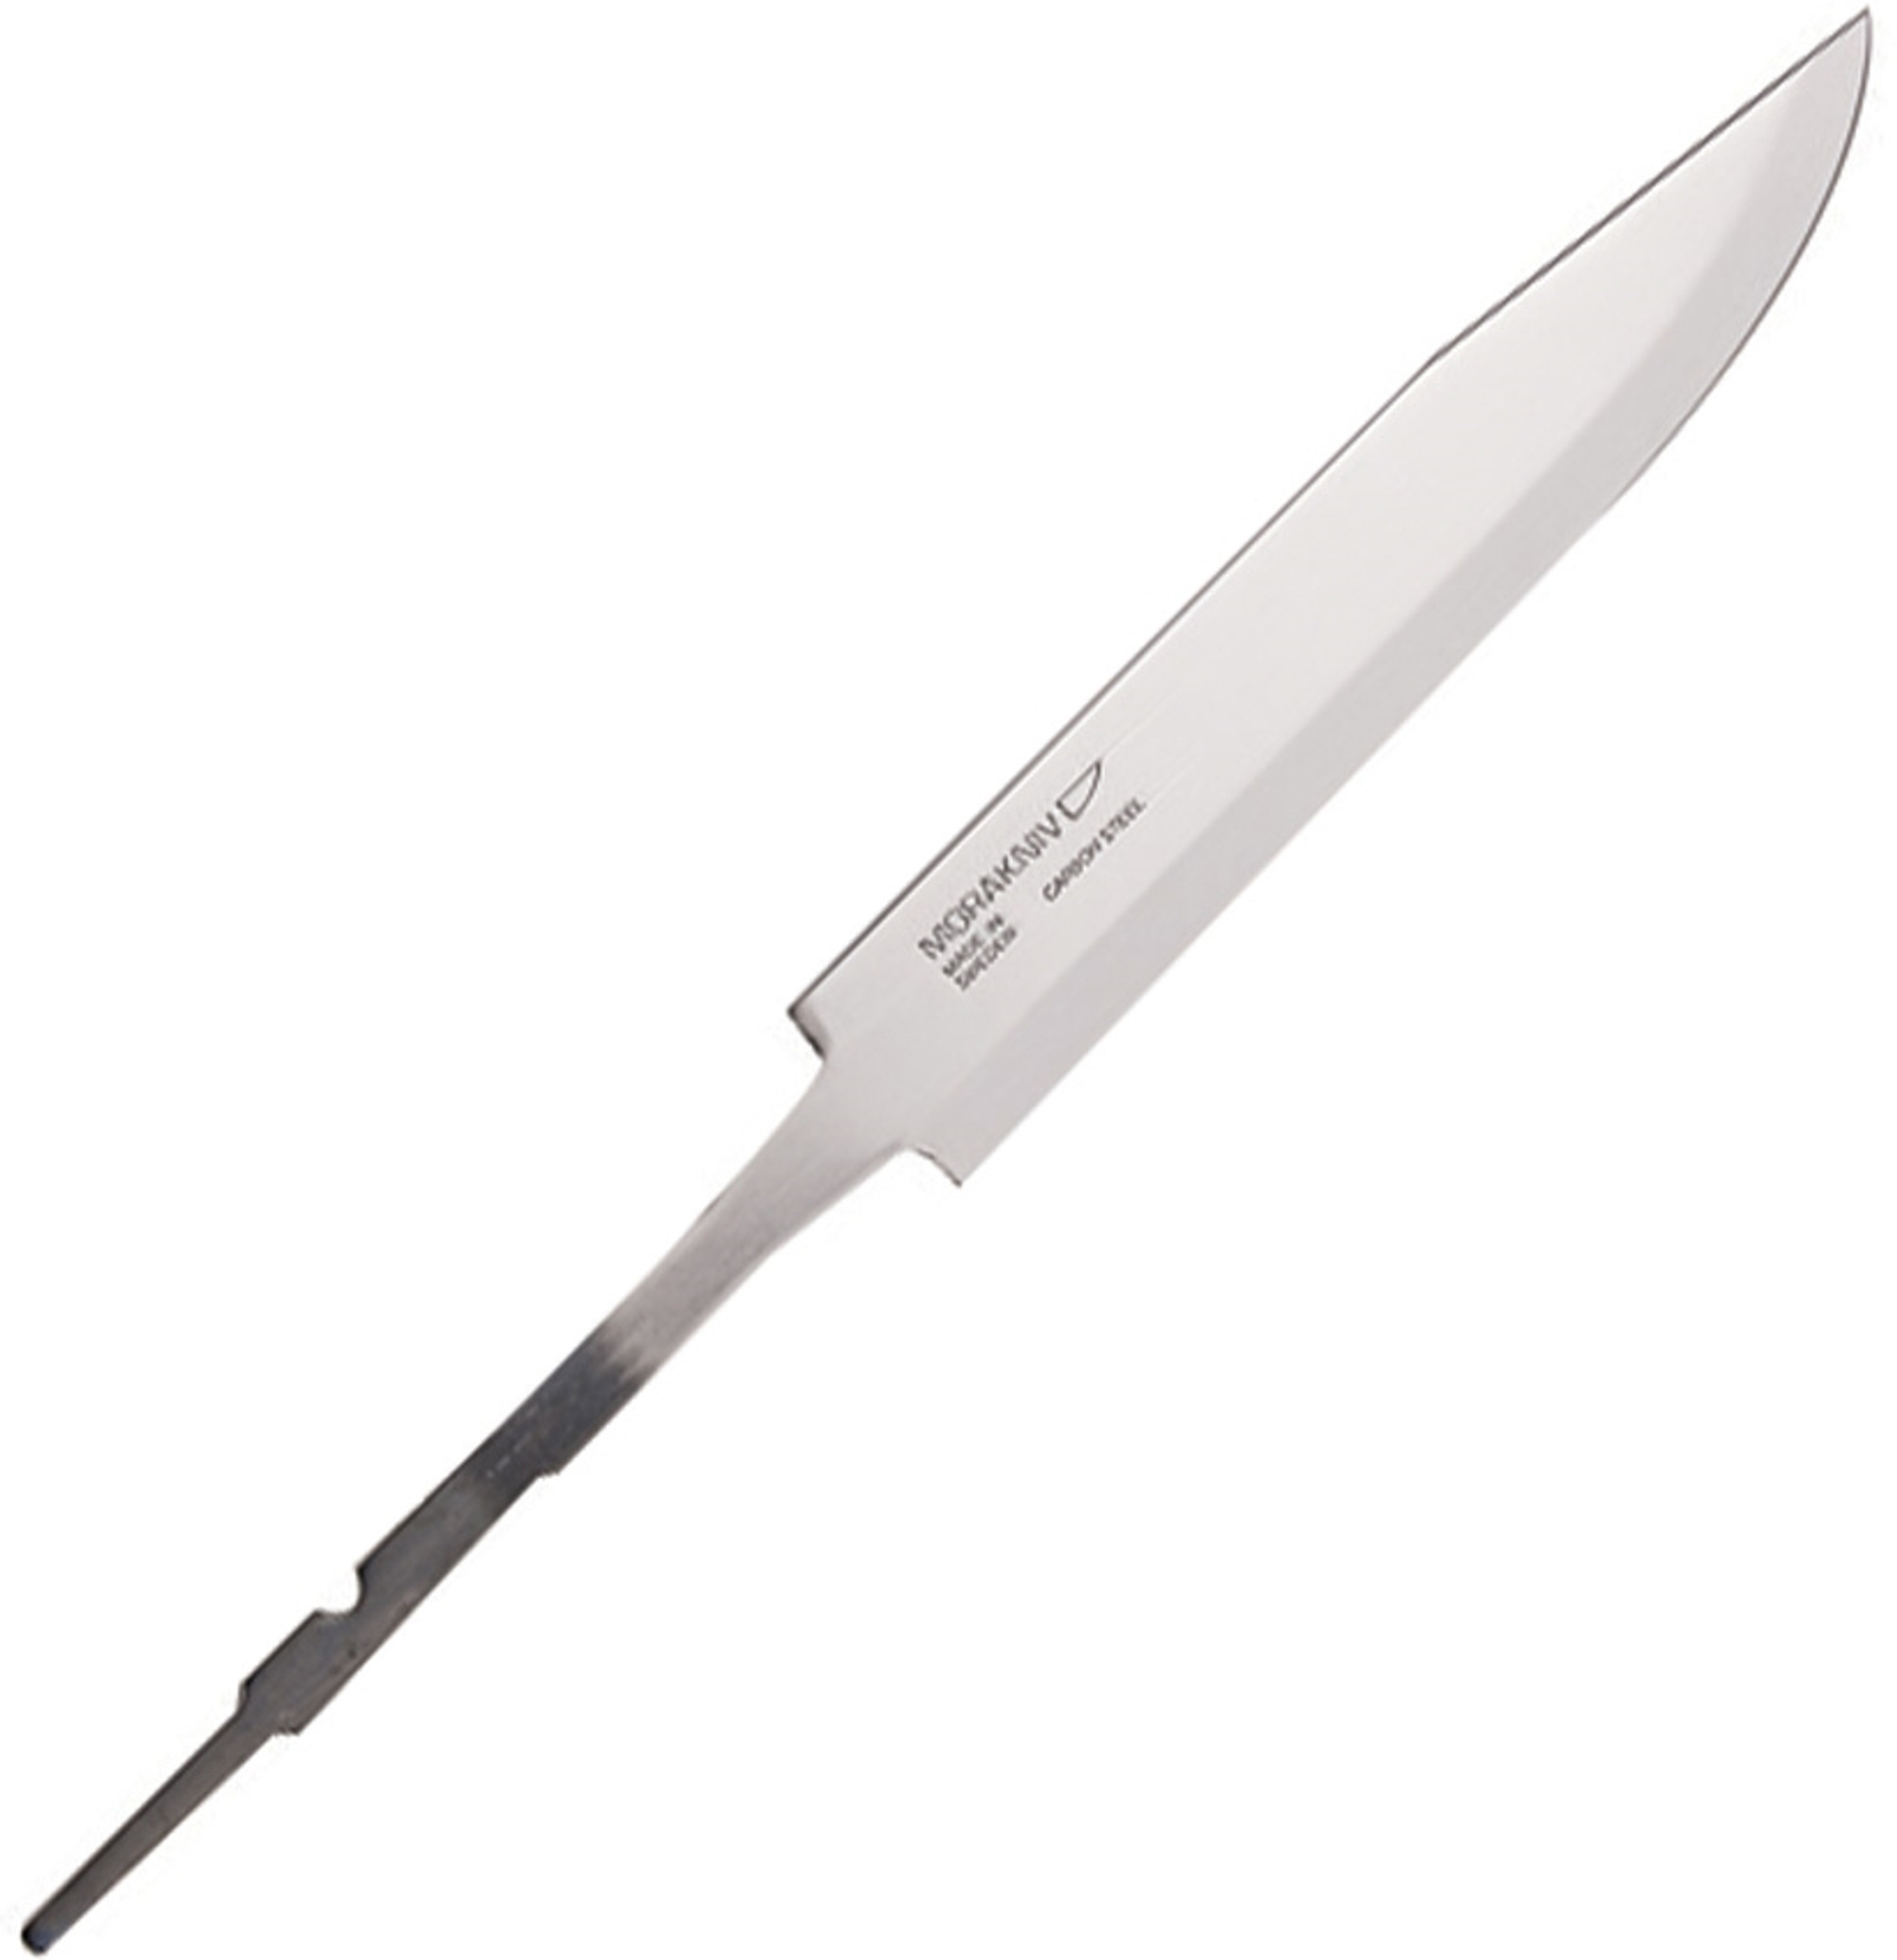 Knife Blade No. 3